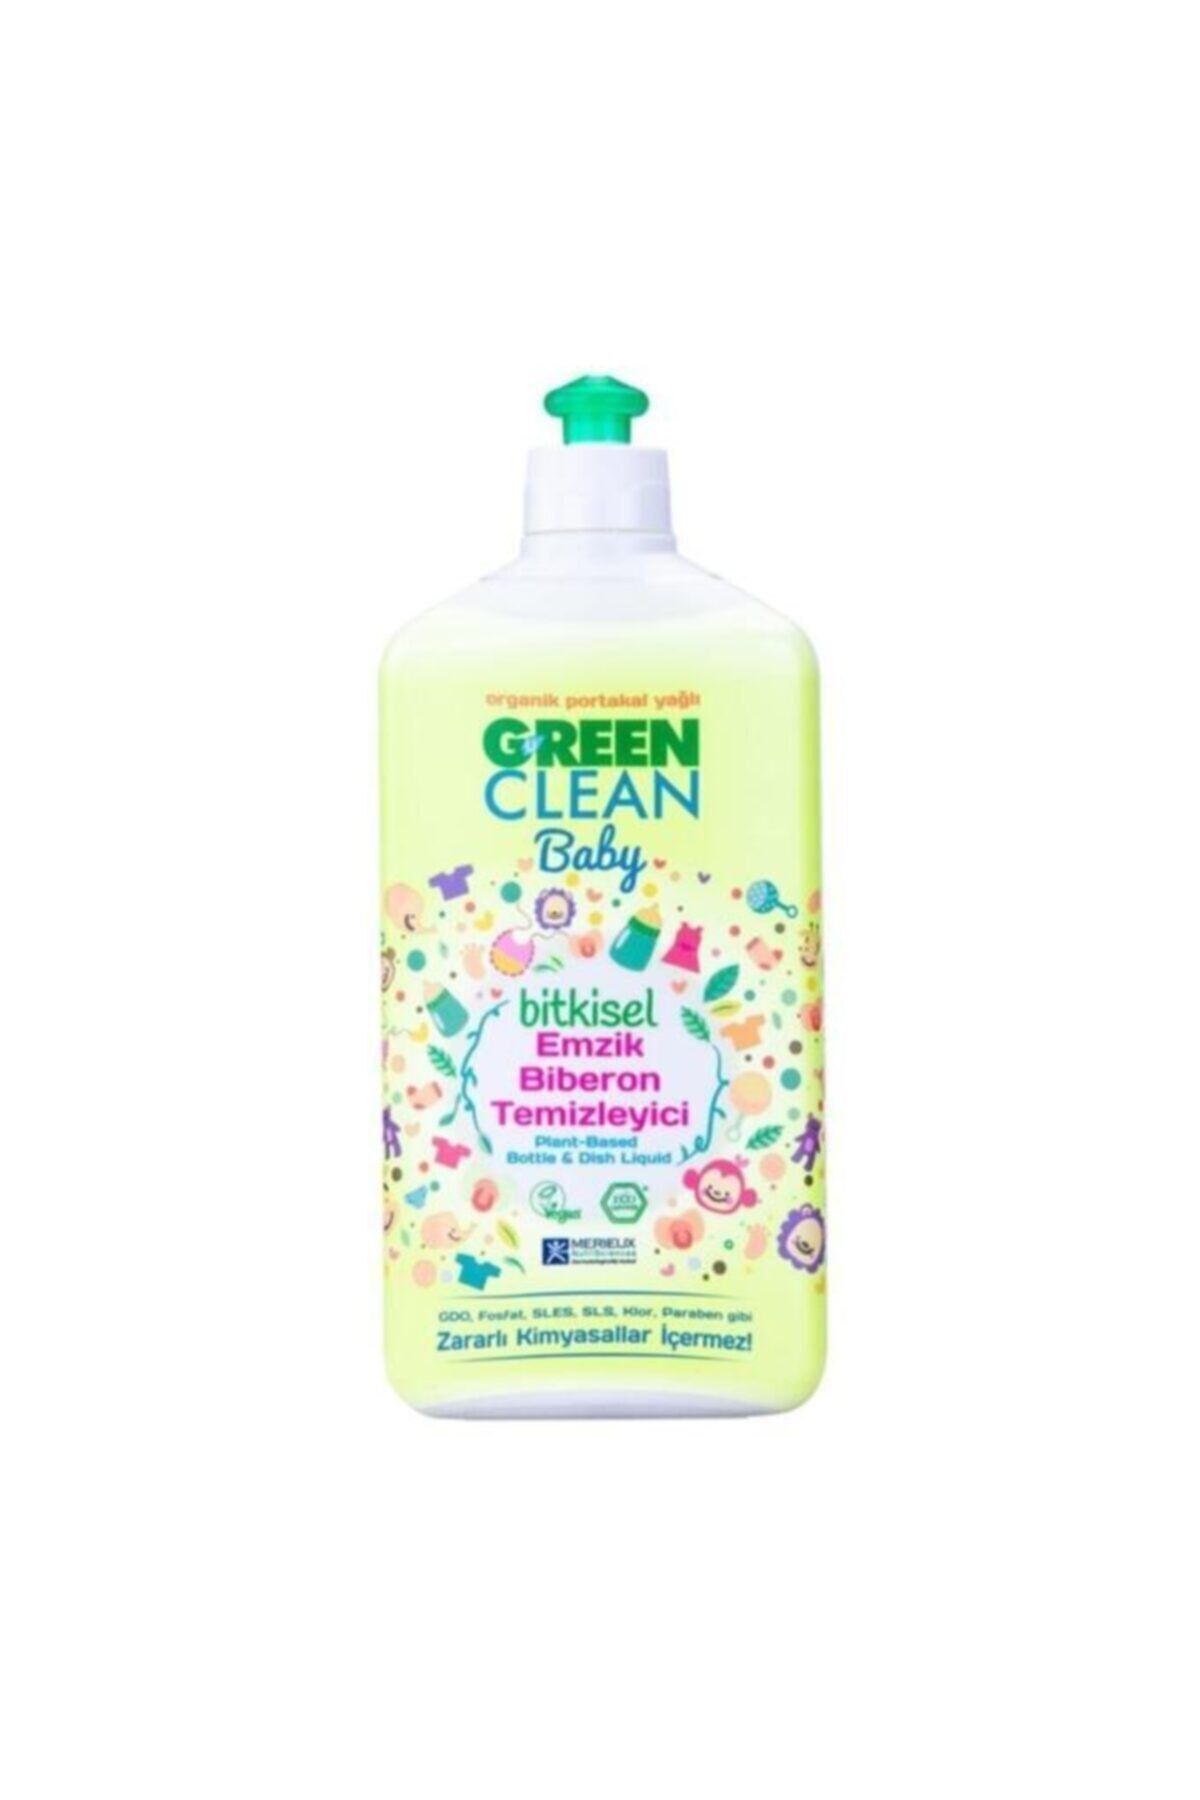 Green Clean U Organik Portakal Yağlı Baby Bitkisel Emzik Biberon Temizleyici 500 Ml